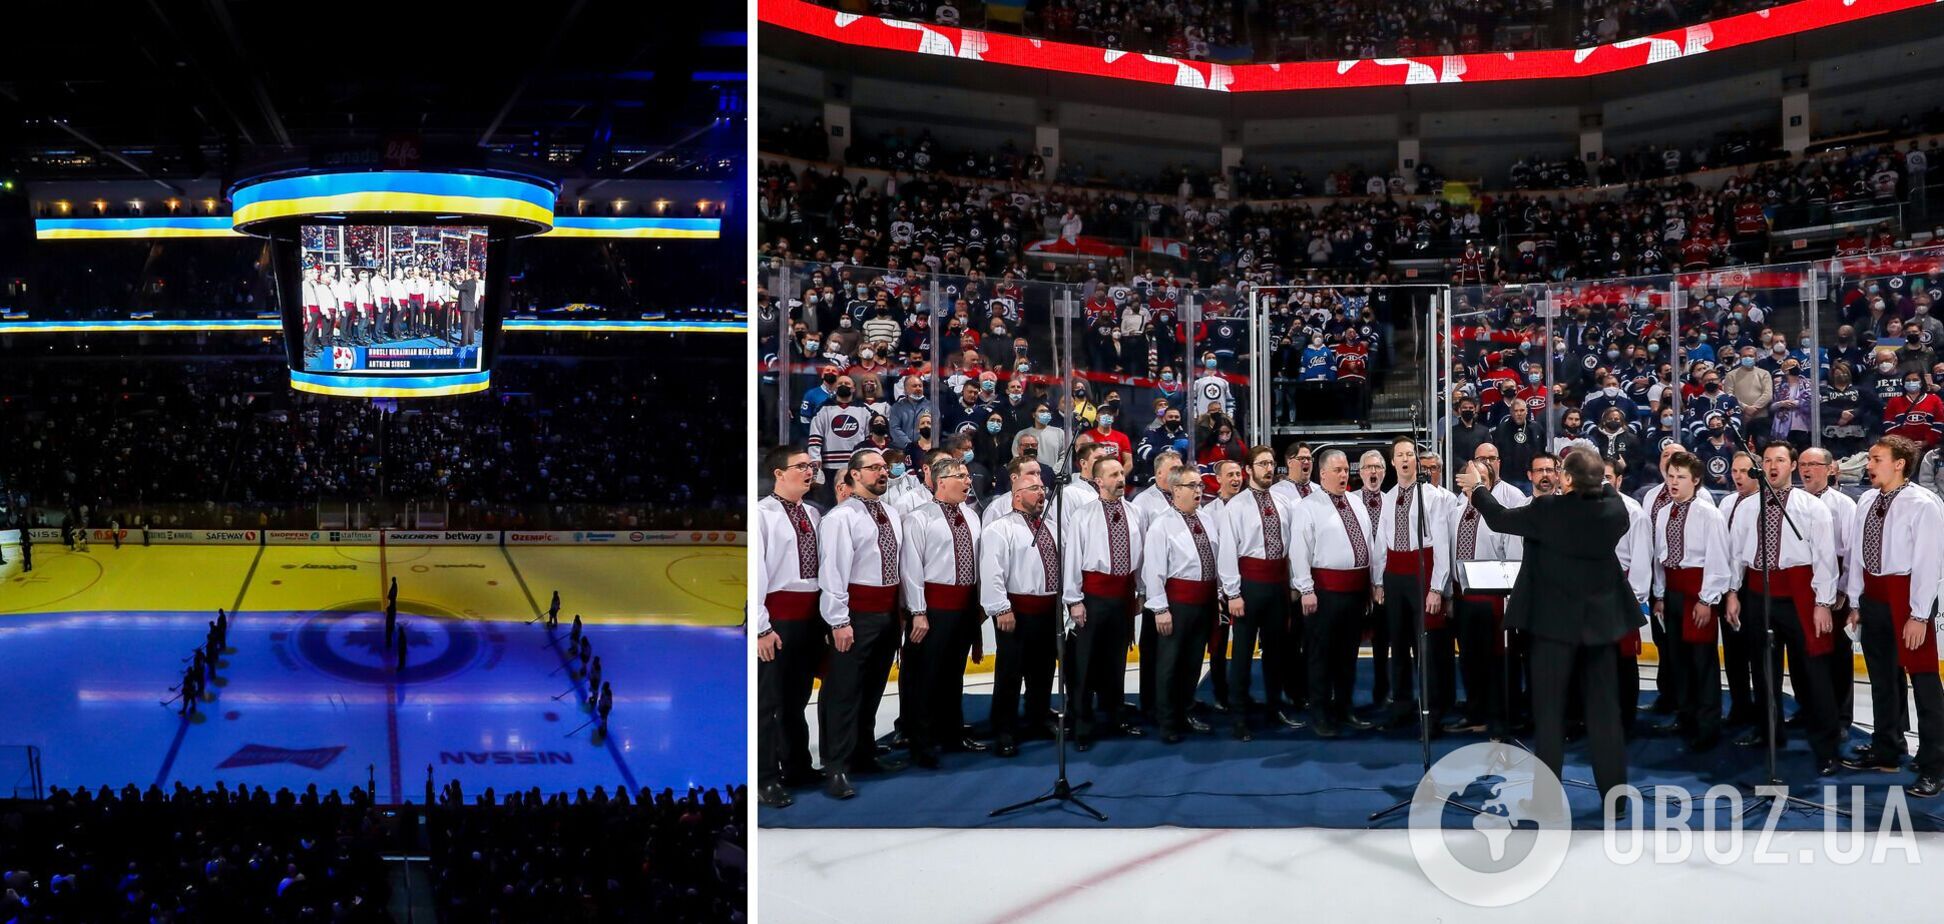 Хор эмоционально исполнил гимн Украины на матче НХЛ, а канадцы устроили овацию. Видео